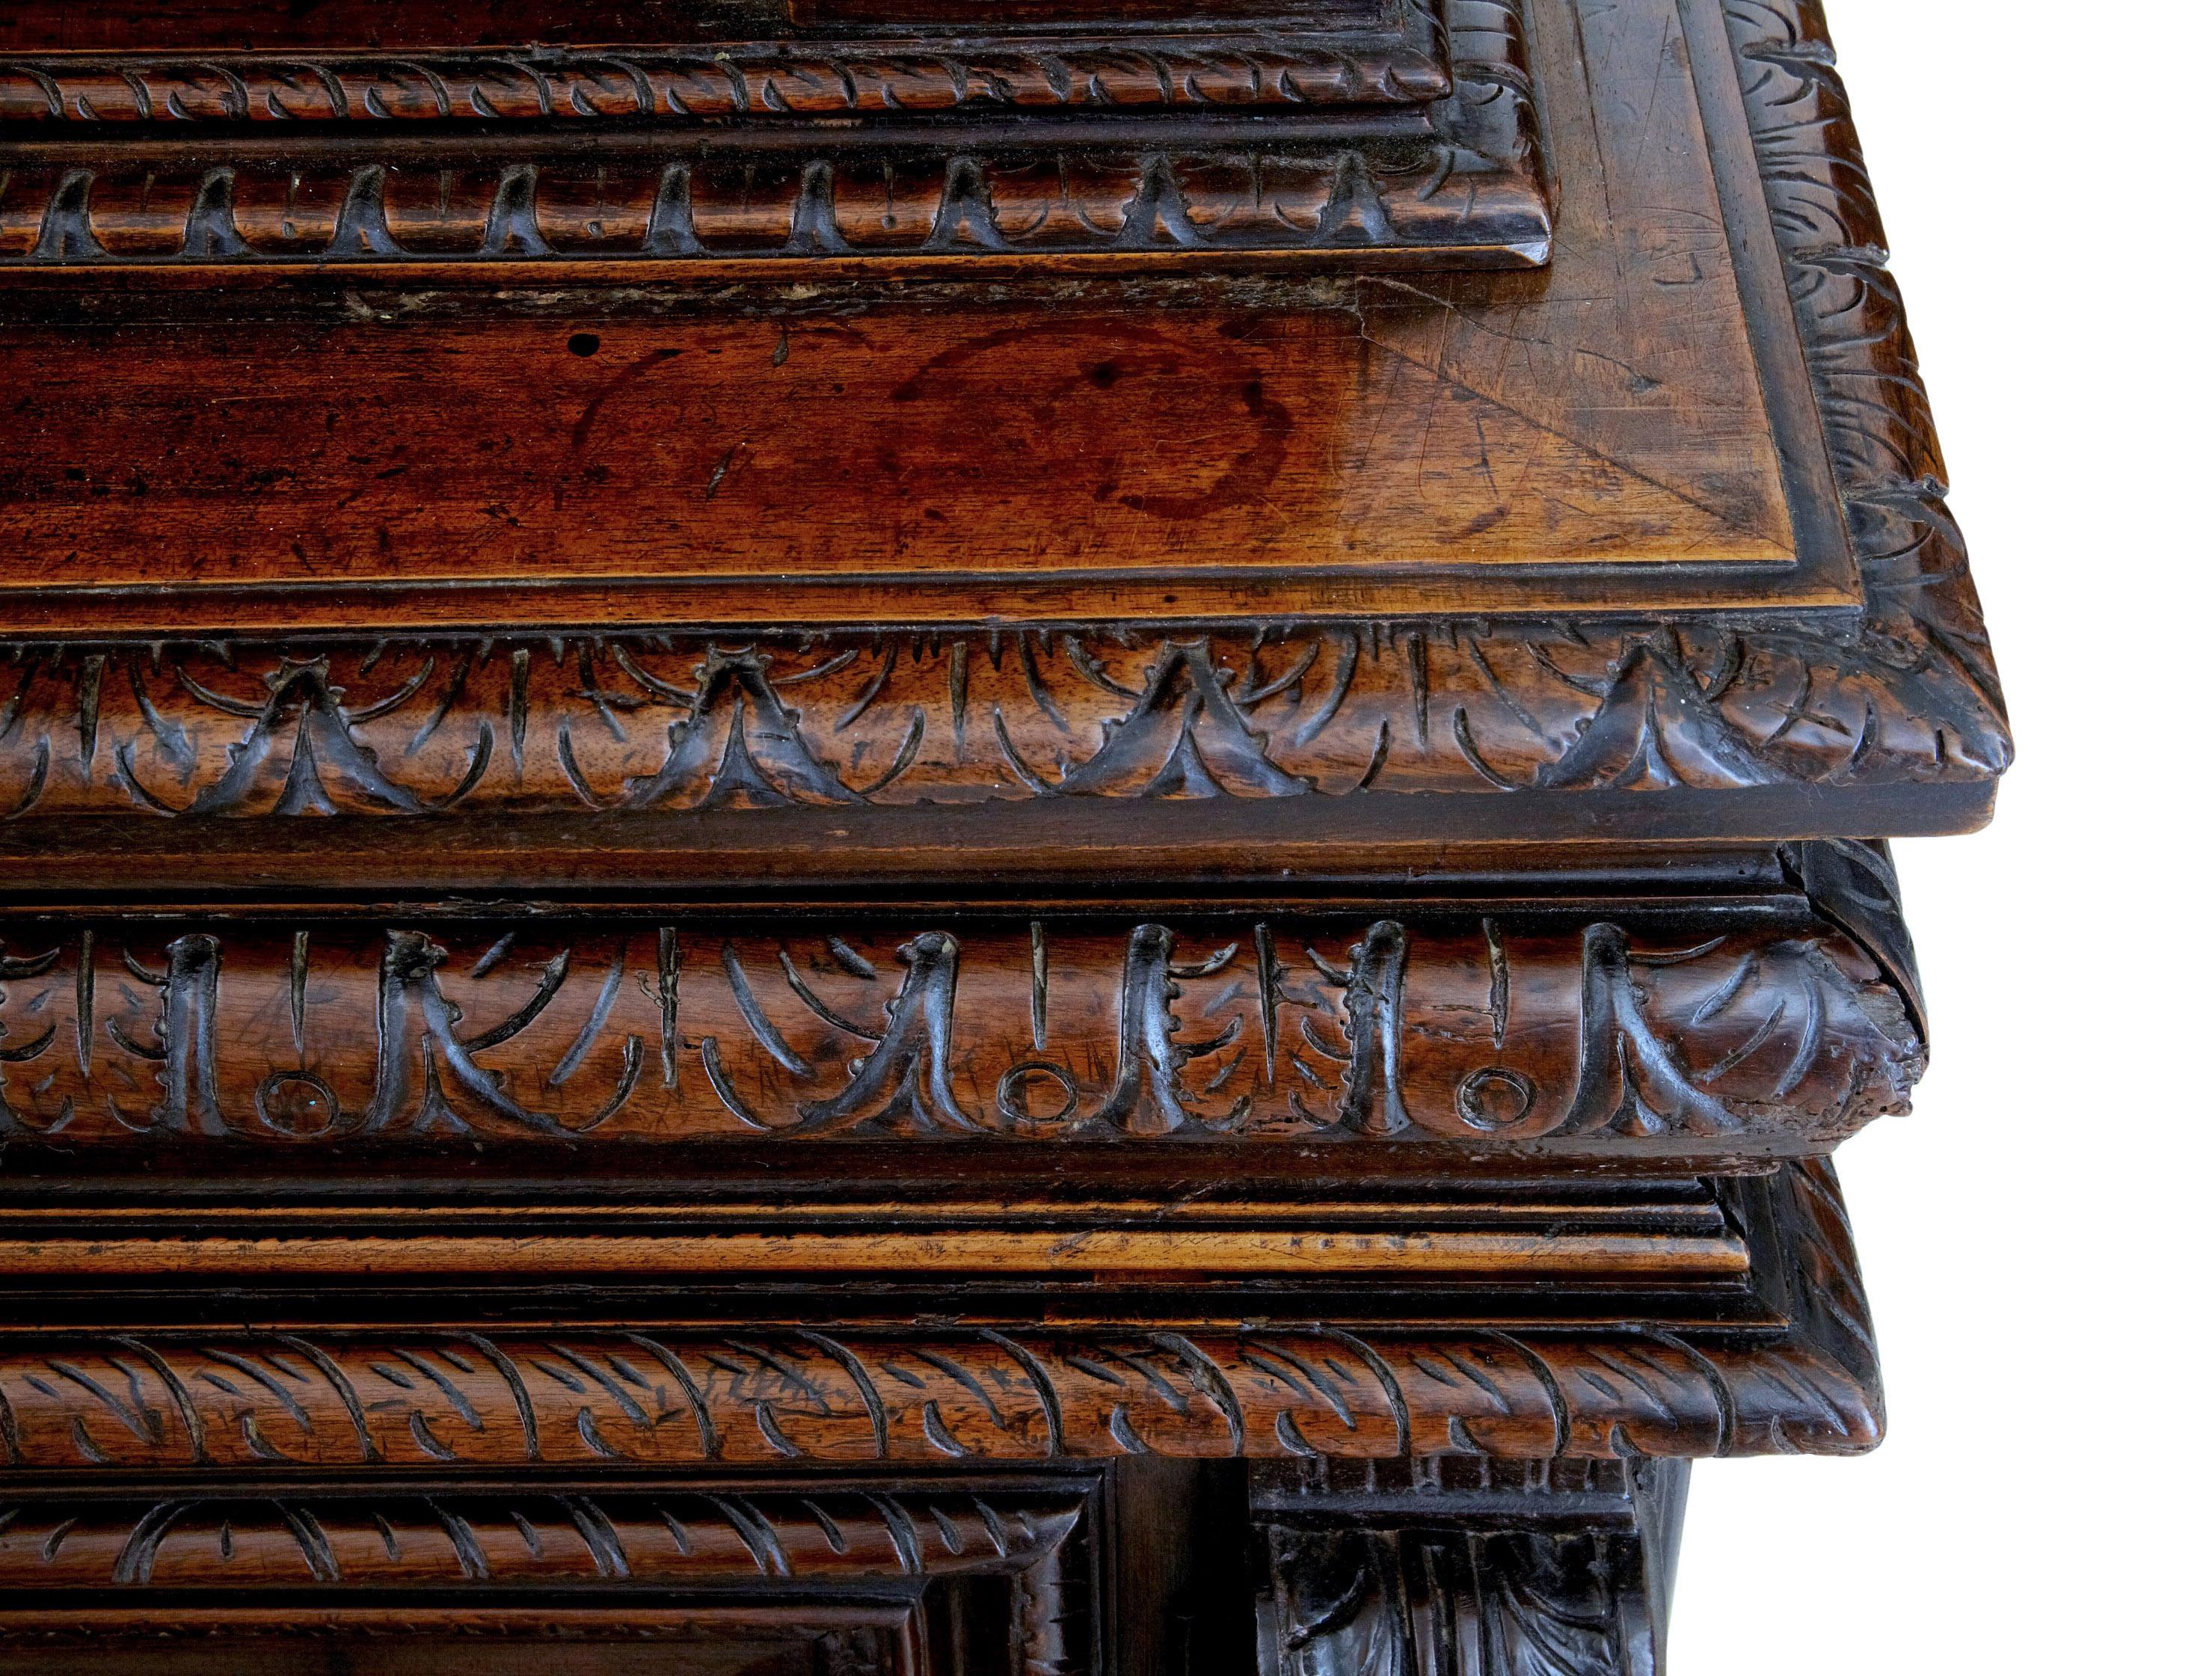 Mitte des 19. Jahrhunderts reich geschnitzter französischer Nussbaumschrank, um 1850.

2-teiliger geschnitzter Nussbaumschrank. Oberer Teil mit schön geschnitzten Doppeltüren, flankiert von Säulen, bekrönt von einem Gesims. Öffnet sich und offenbart